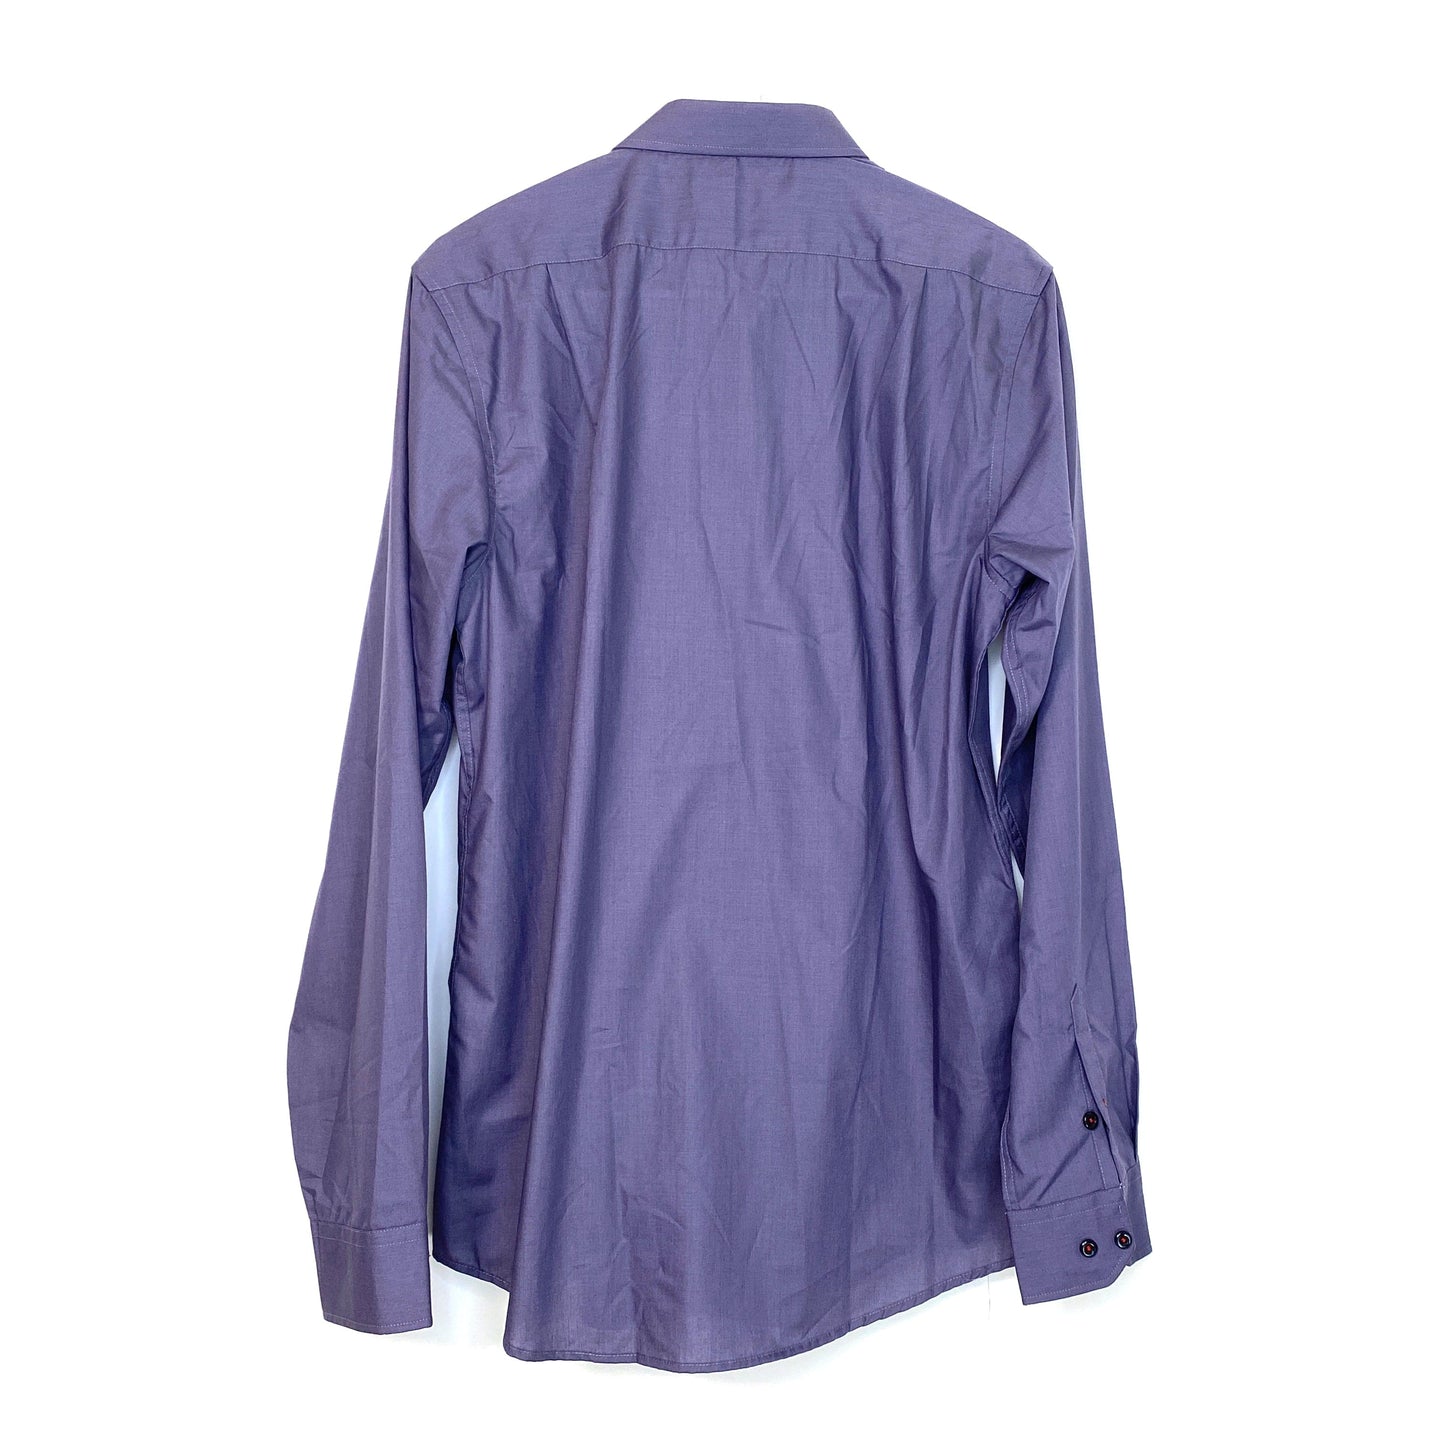 St. Lynn pour hommer Mens Size L Purple Dress Shirt Button-Up L/s